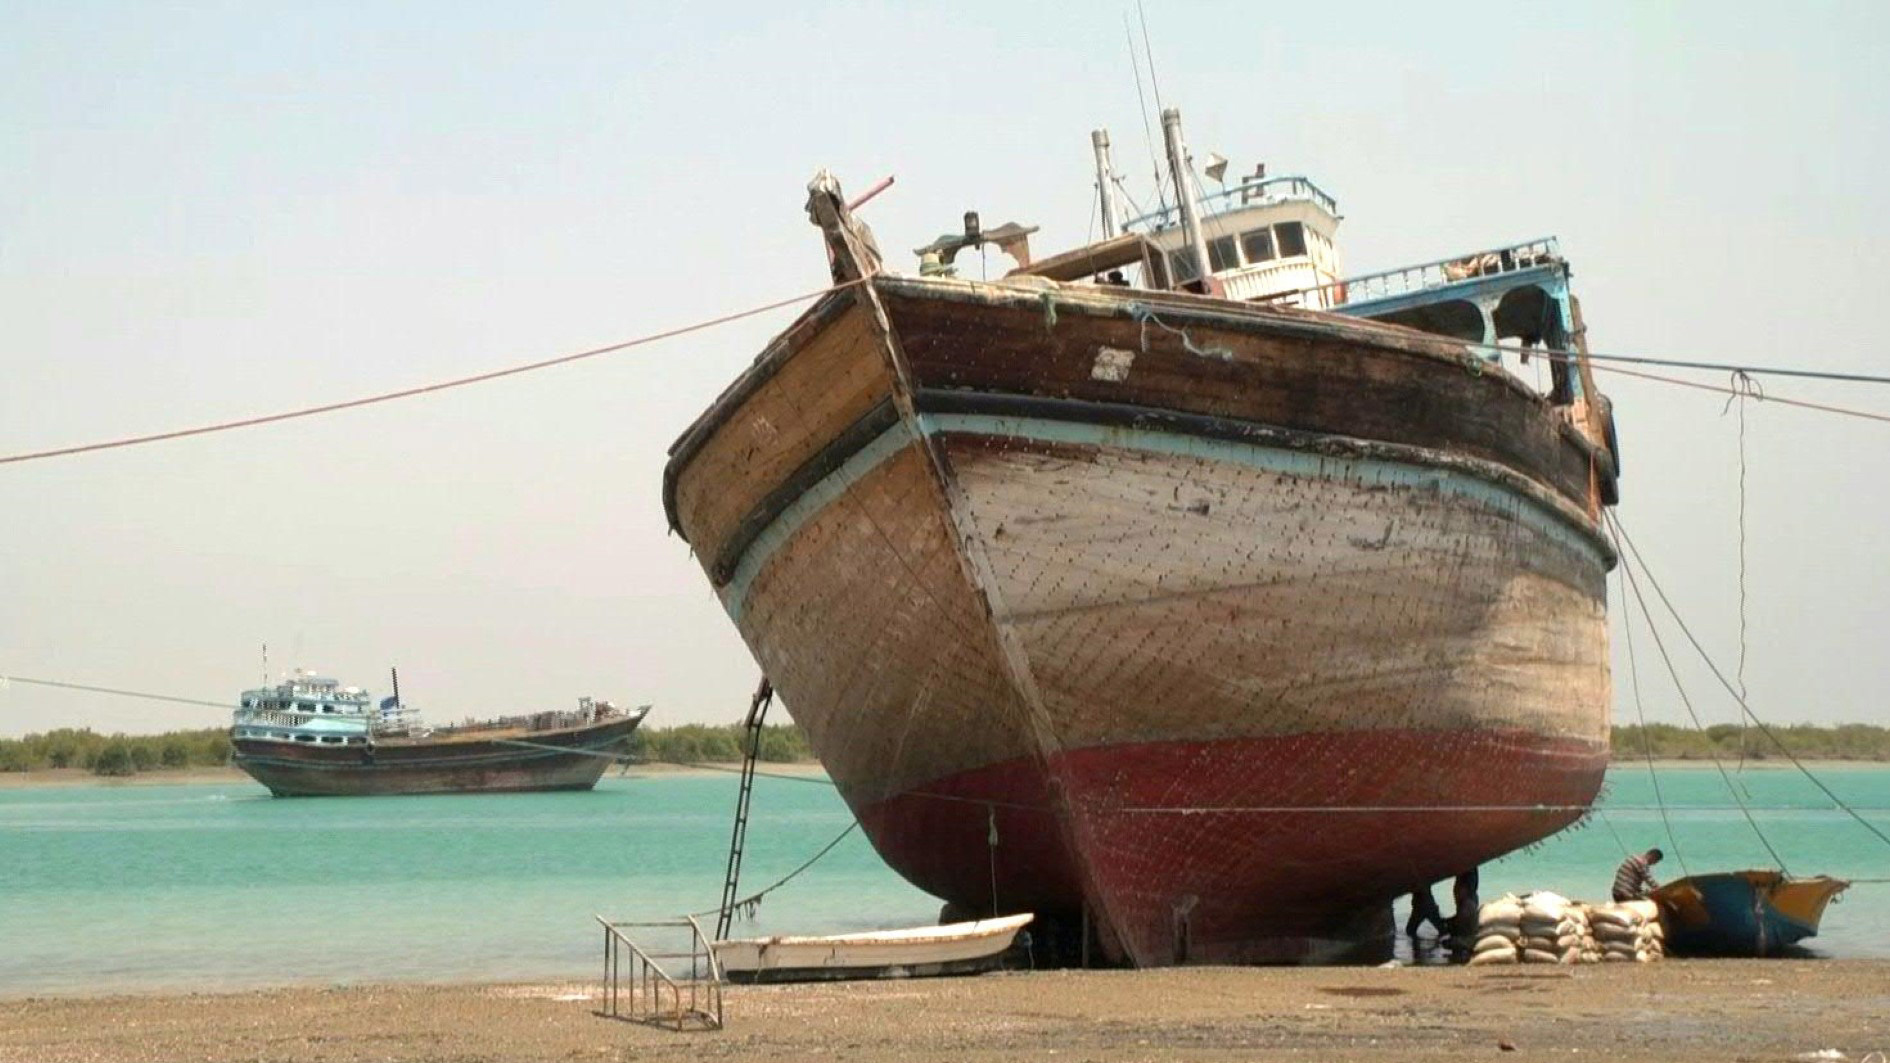 السفن الخشبية في قشم الإيرانية...من الملاحة إلى السياحة